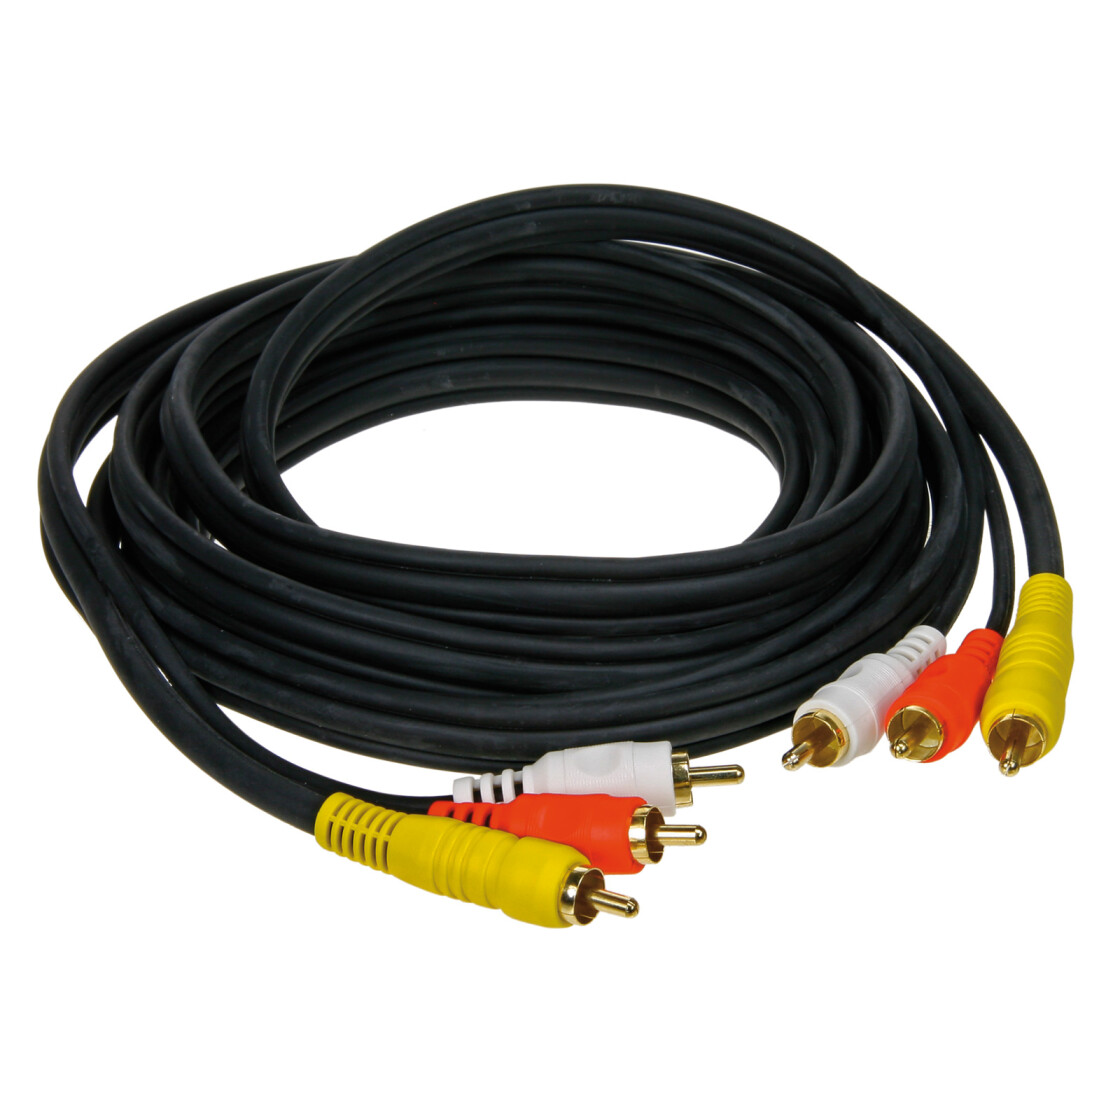 https://www.heinze-elektronik.de/media/image/product/2310/lg/a-v-kabel-3-m-3-stecker-rot-weiss-gelb.jpg